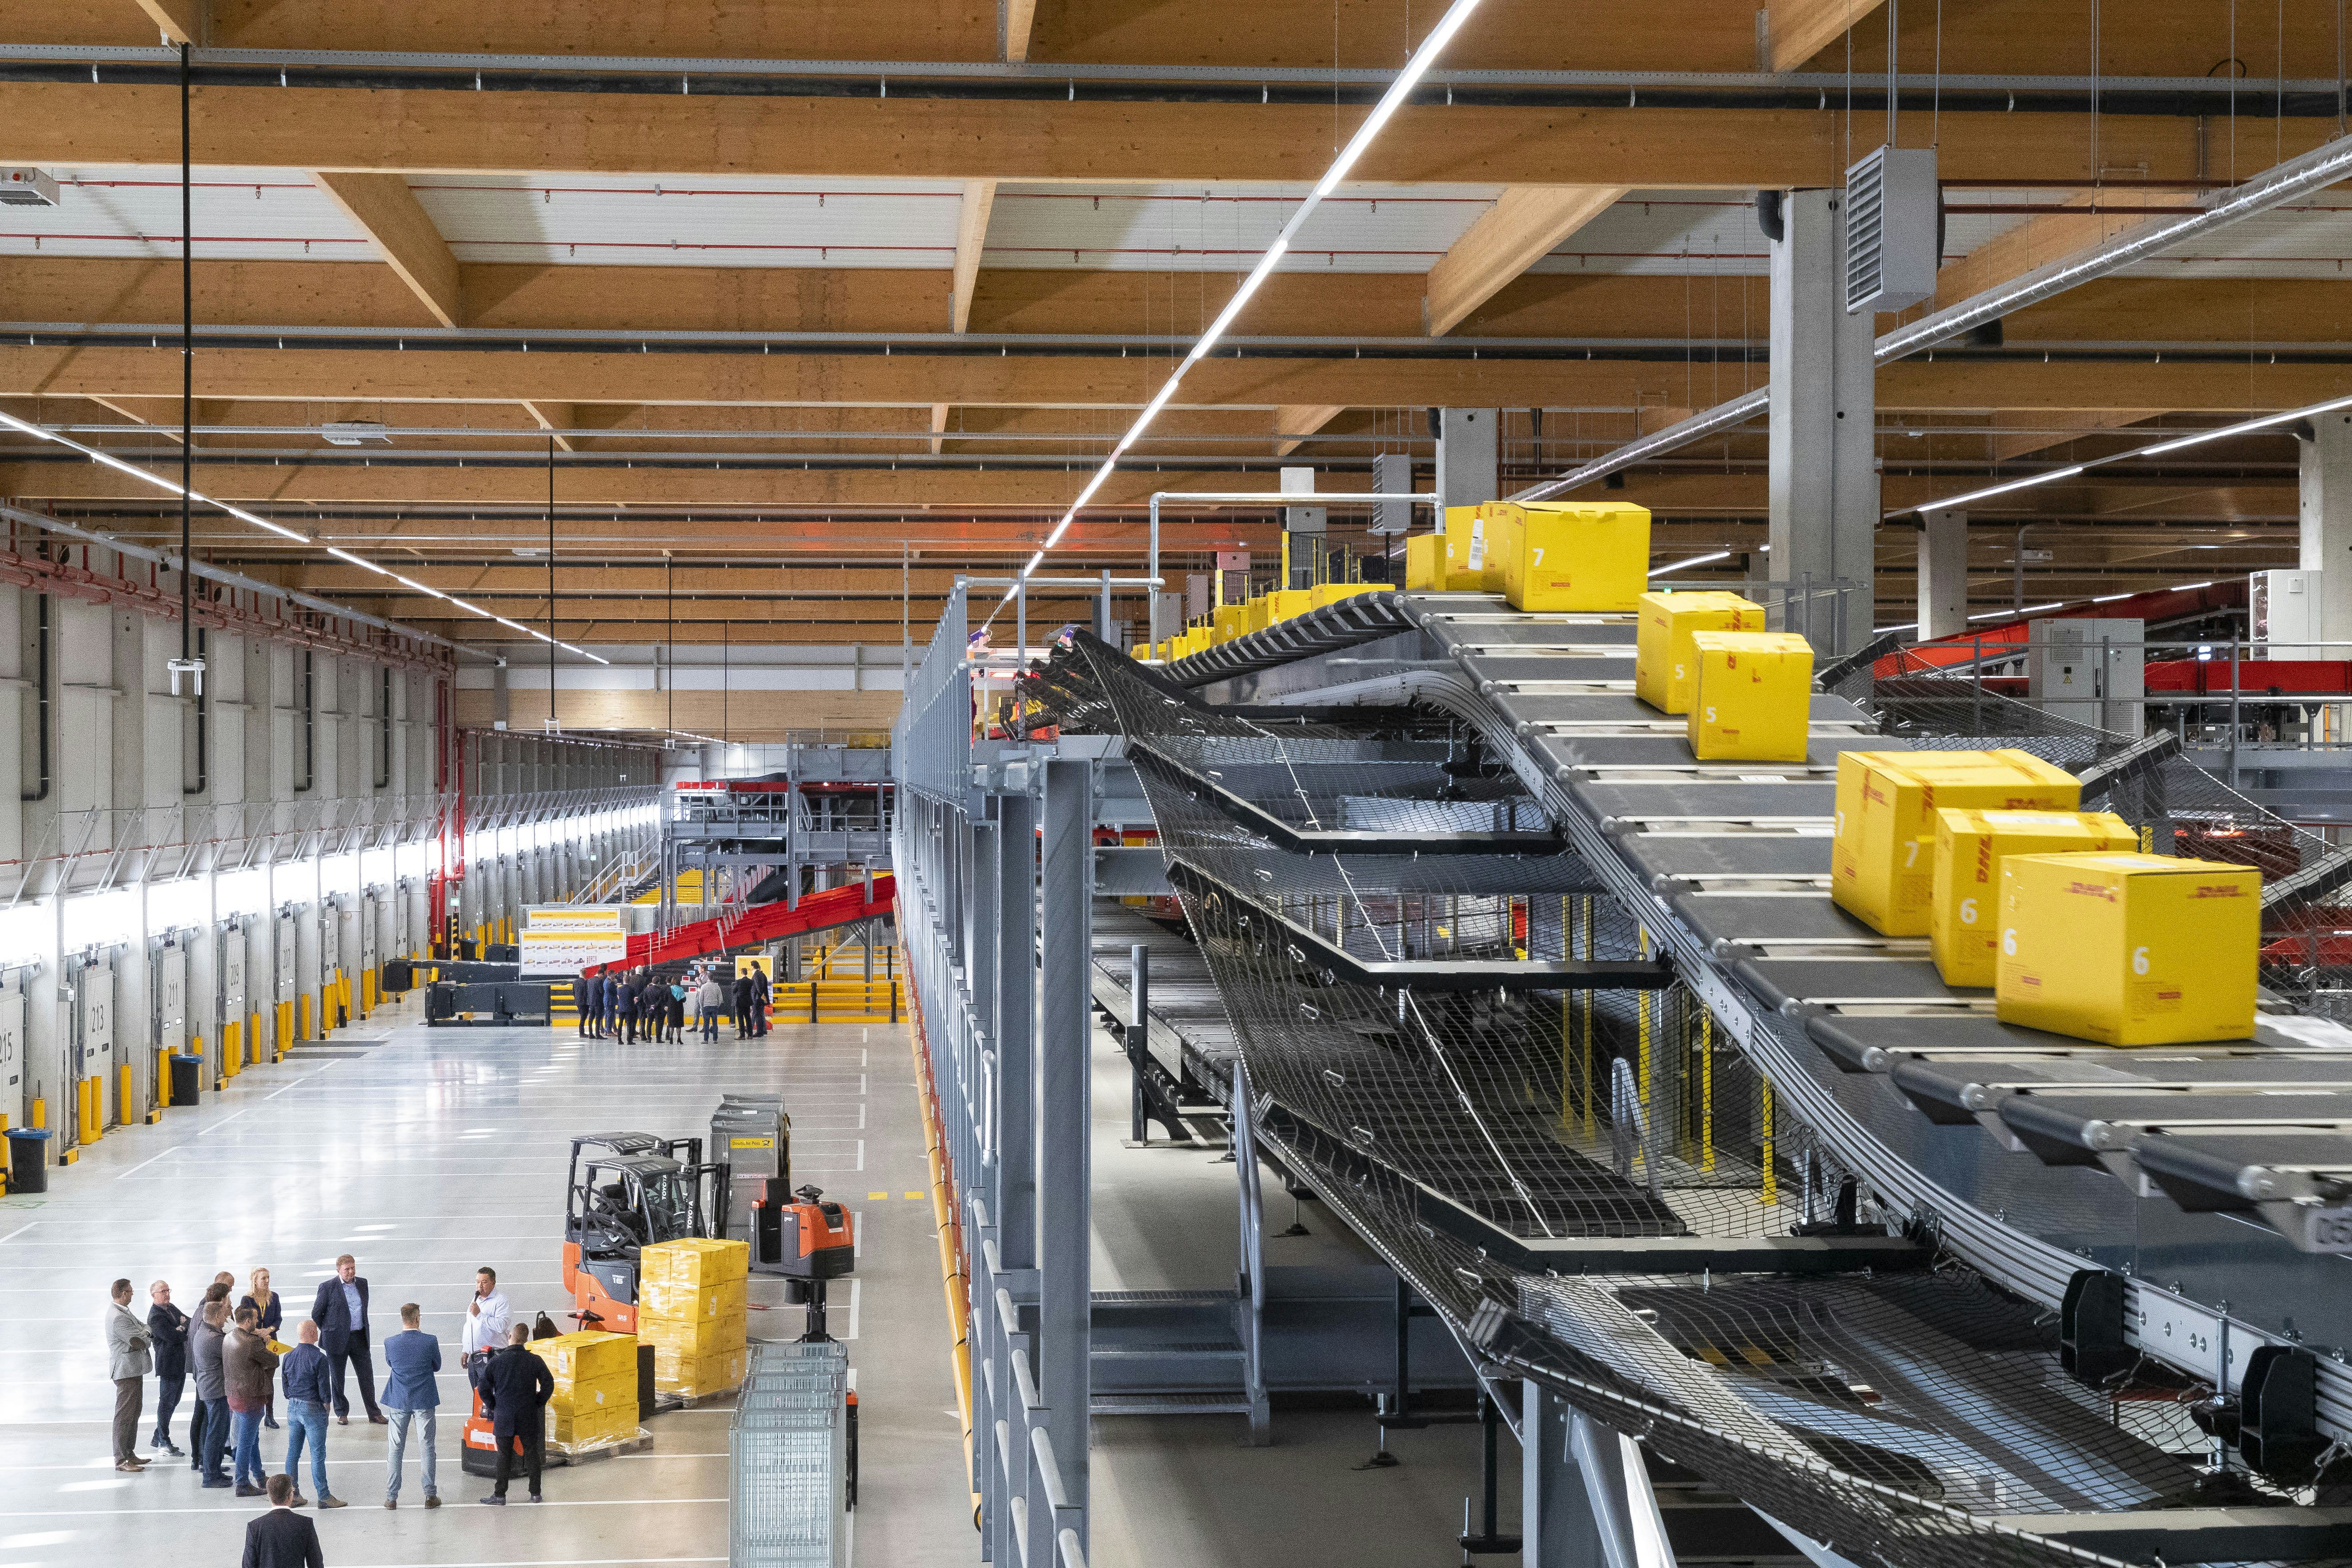 DHL's nieuwste e-commerce hub is de grootste en groenste van Nederland